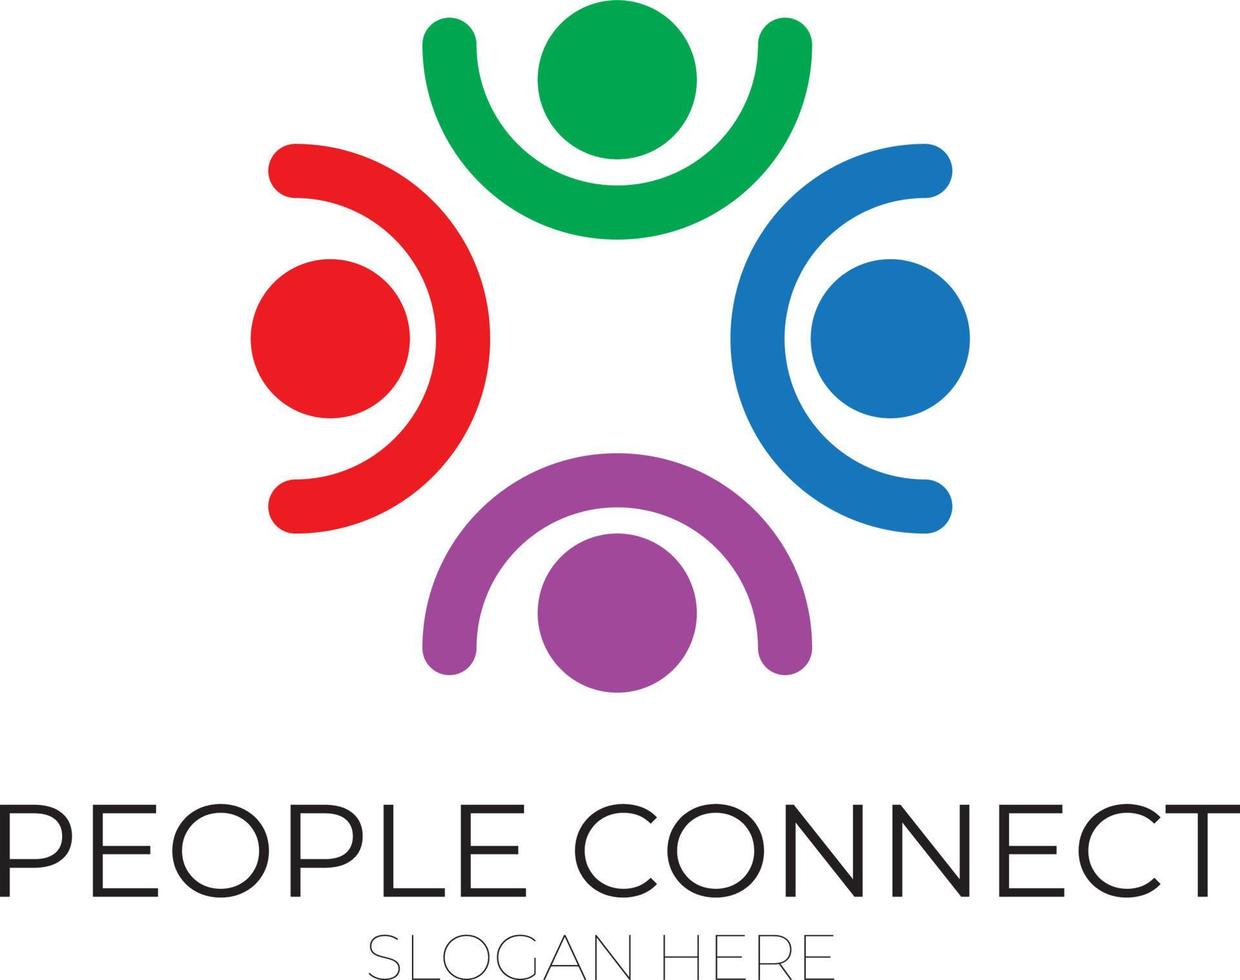 la gente conecta logo.communication logo. logotipo de la familia. vector de diseño de logotipo de amigos de socios de equipo de redes sociales